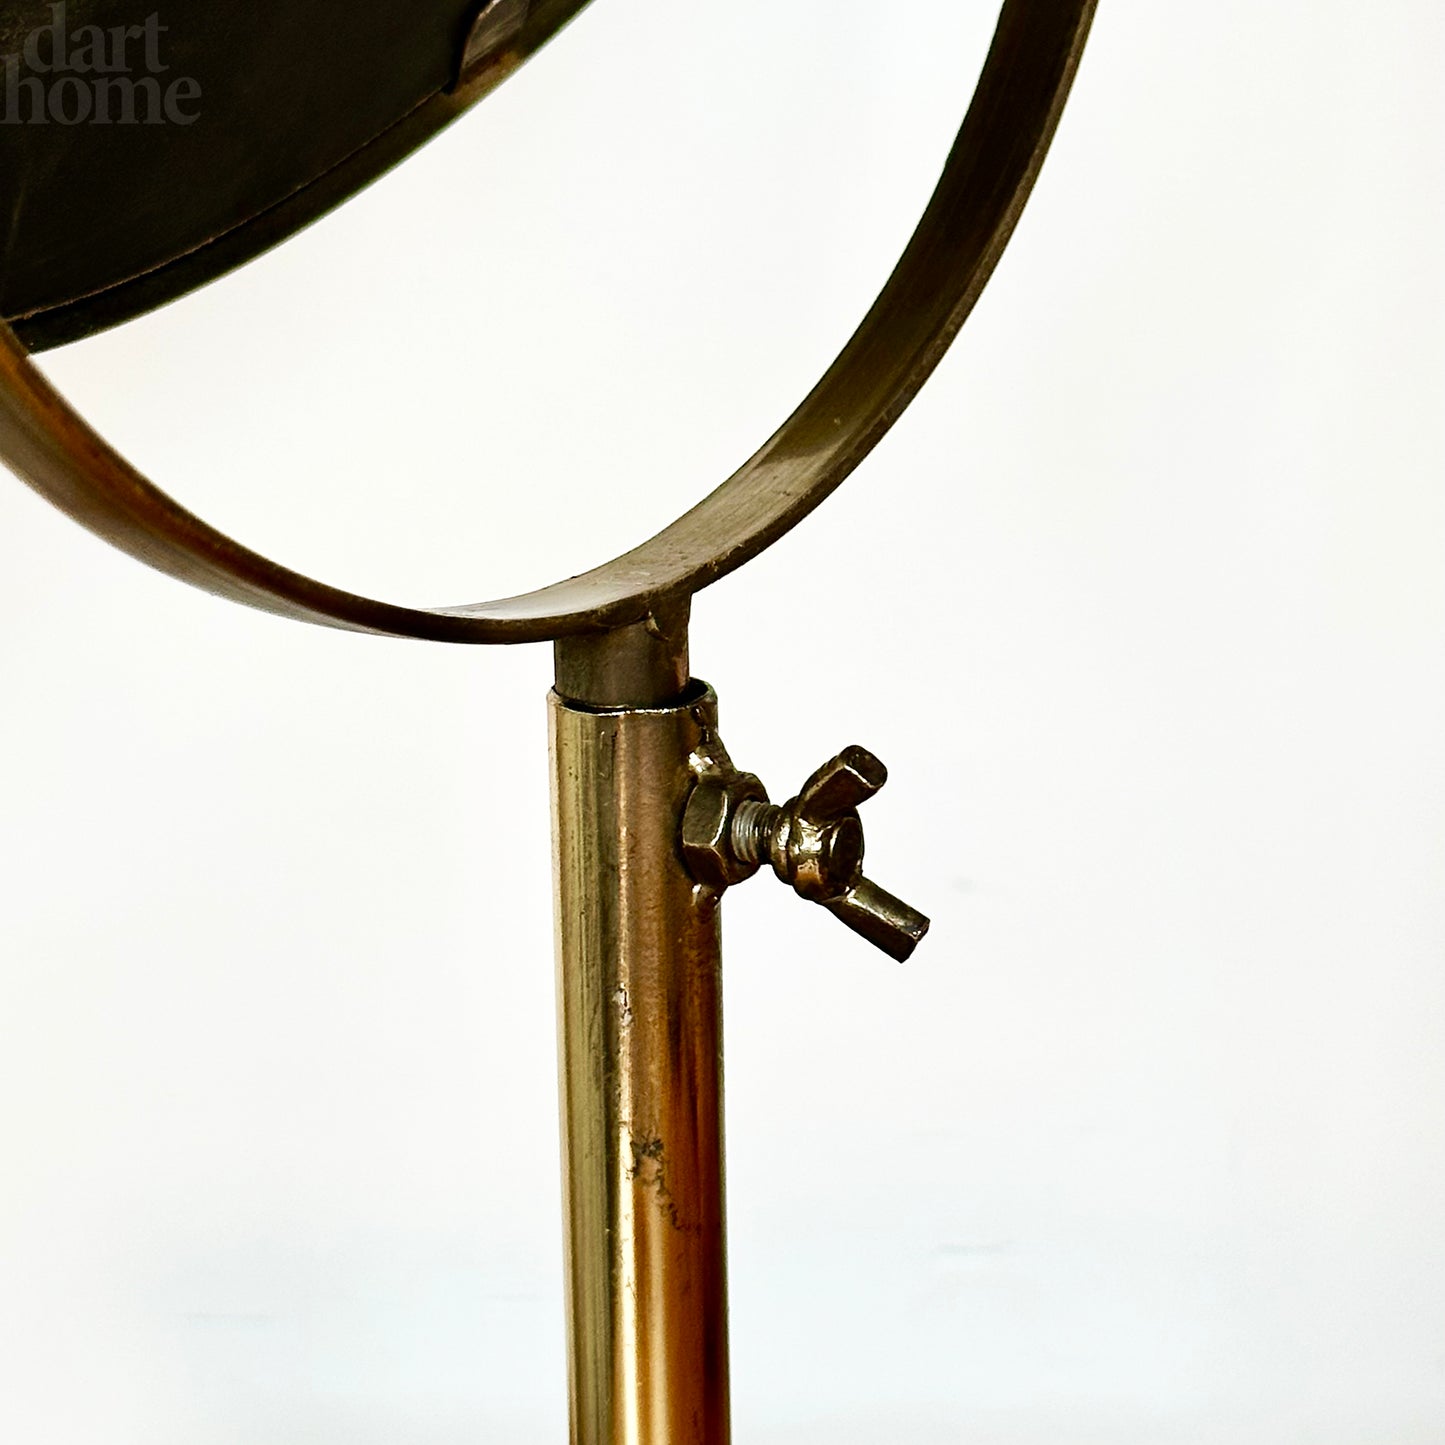 Gold Convex Adjustable Table Mirror